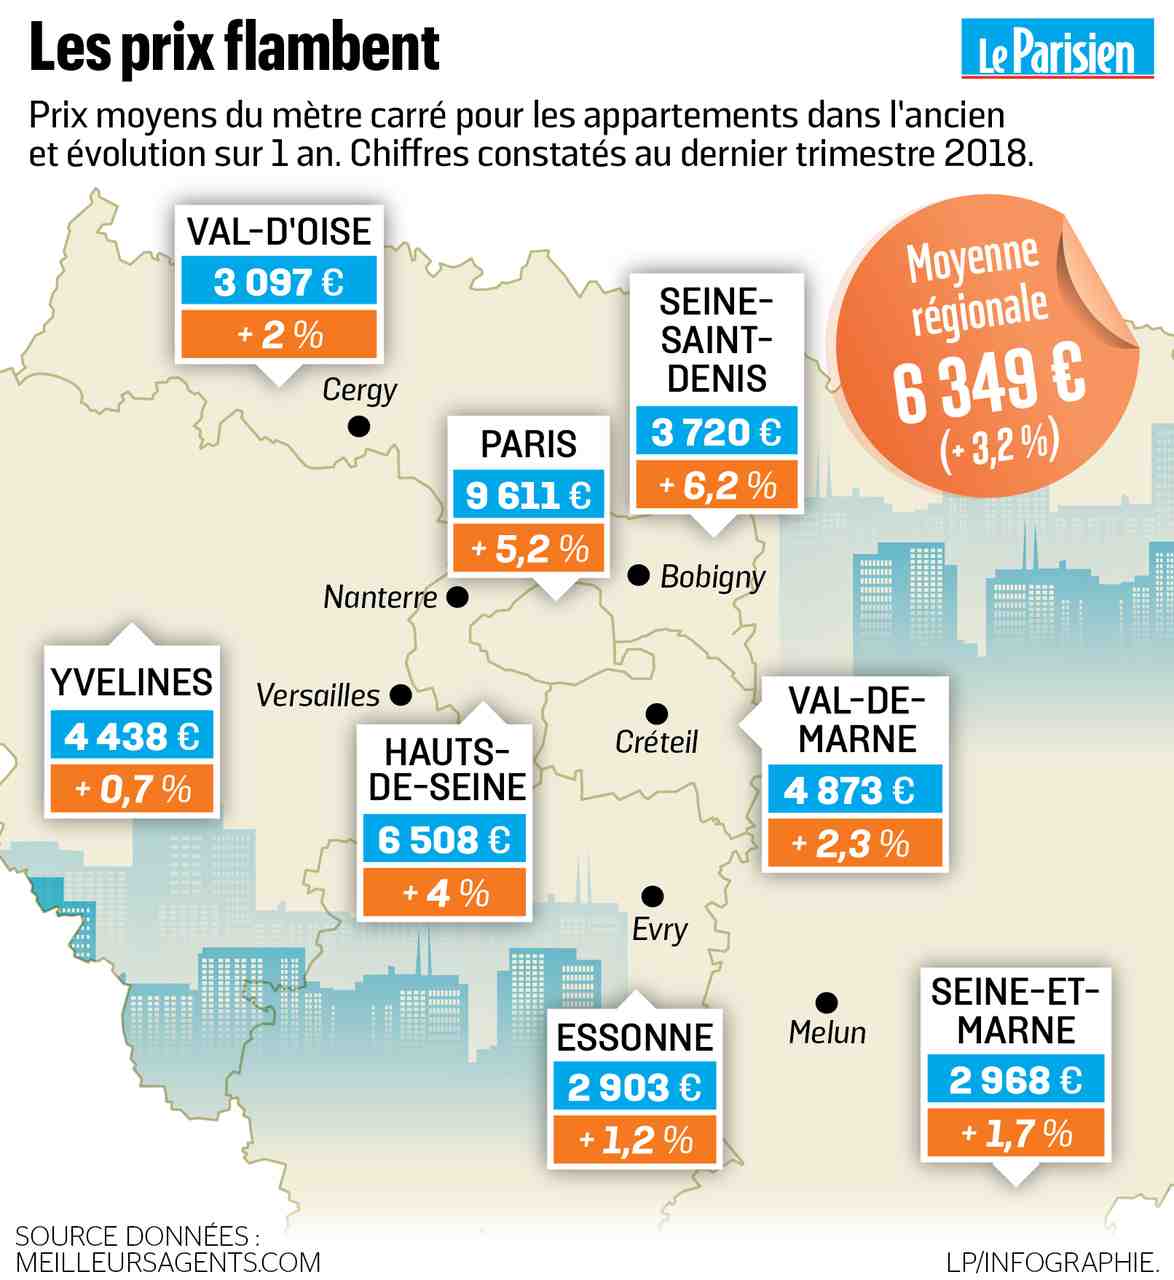 Quelles sont les villes les moins chères de France?